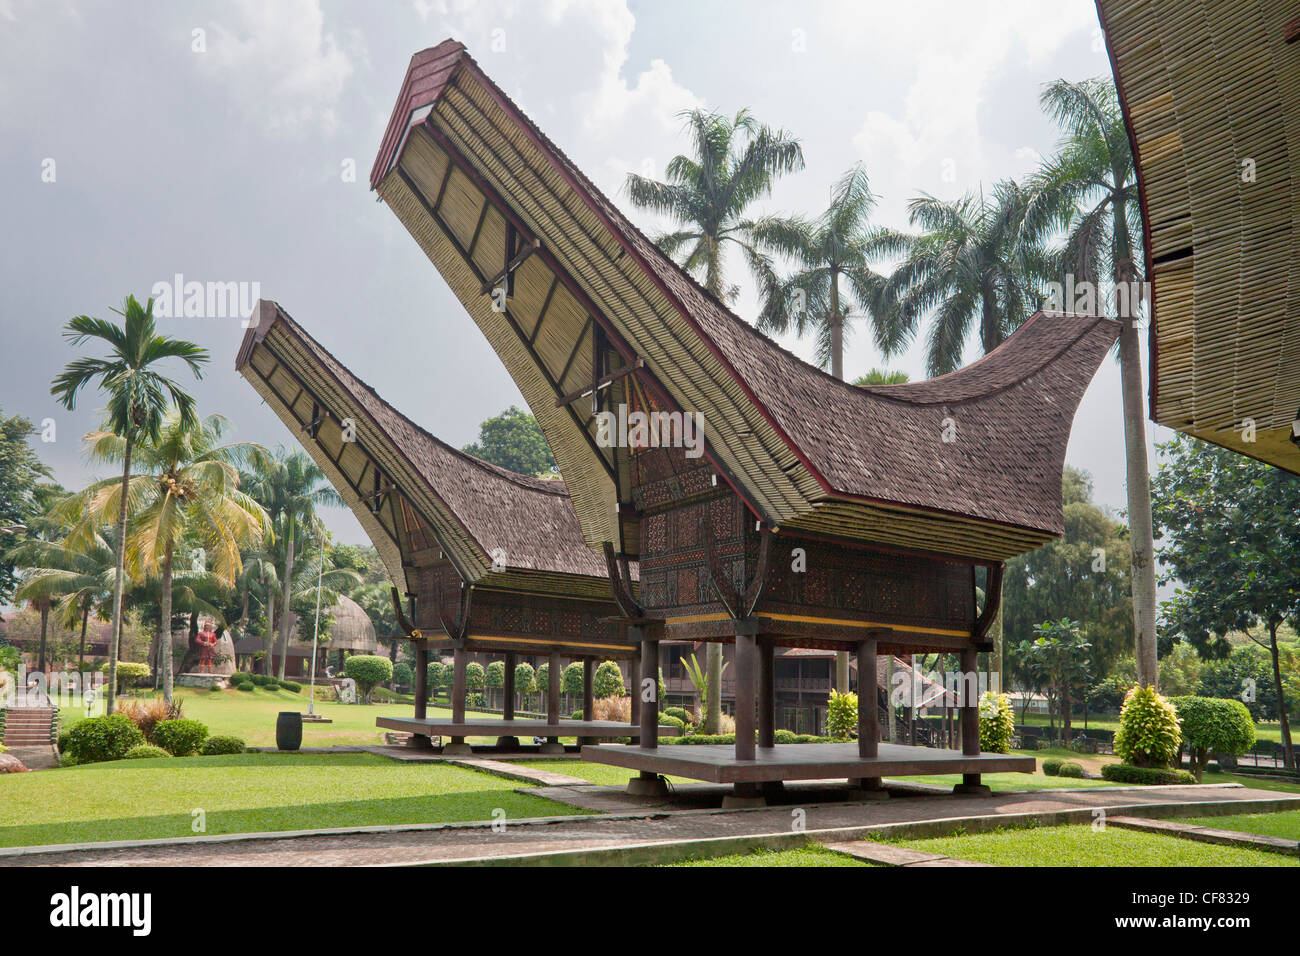  Indonesia  Asia Jakarta  city  Mini Indonesia  Park Rumah  